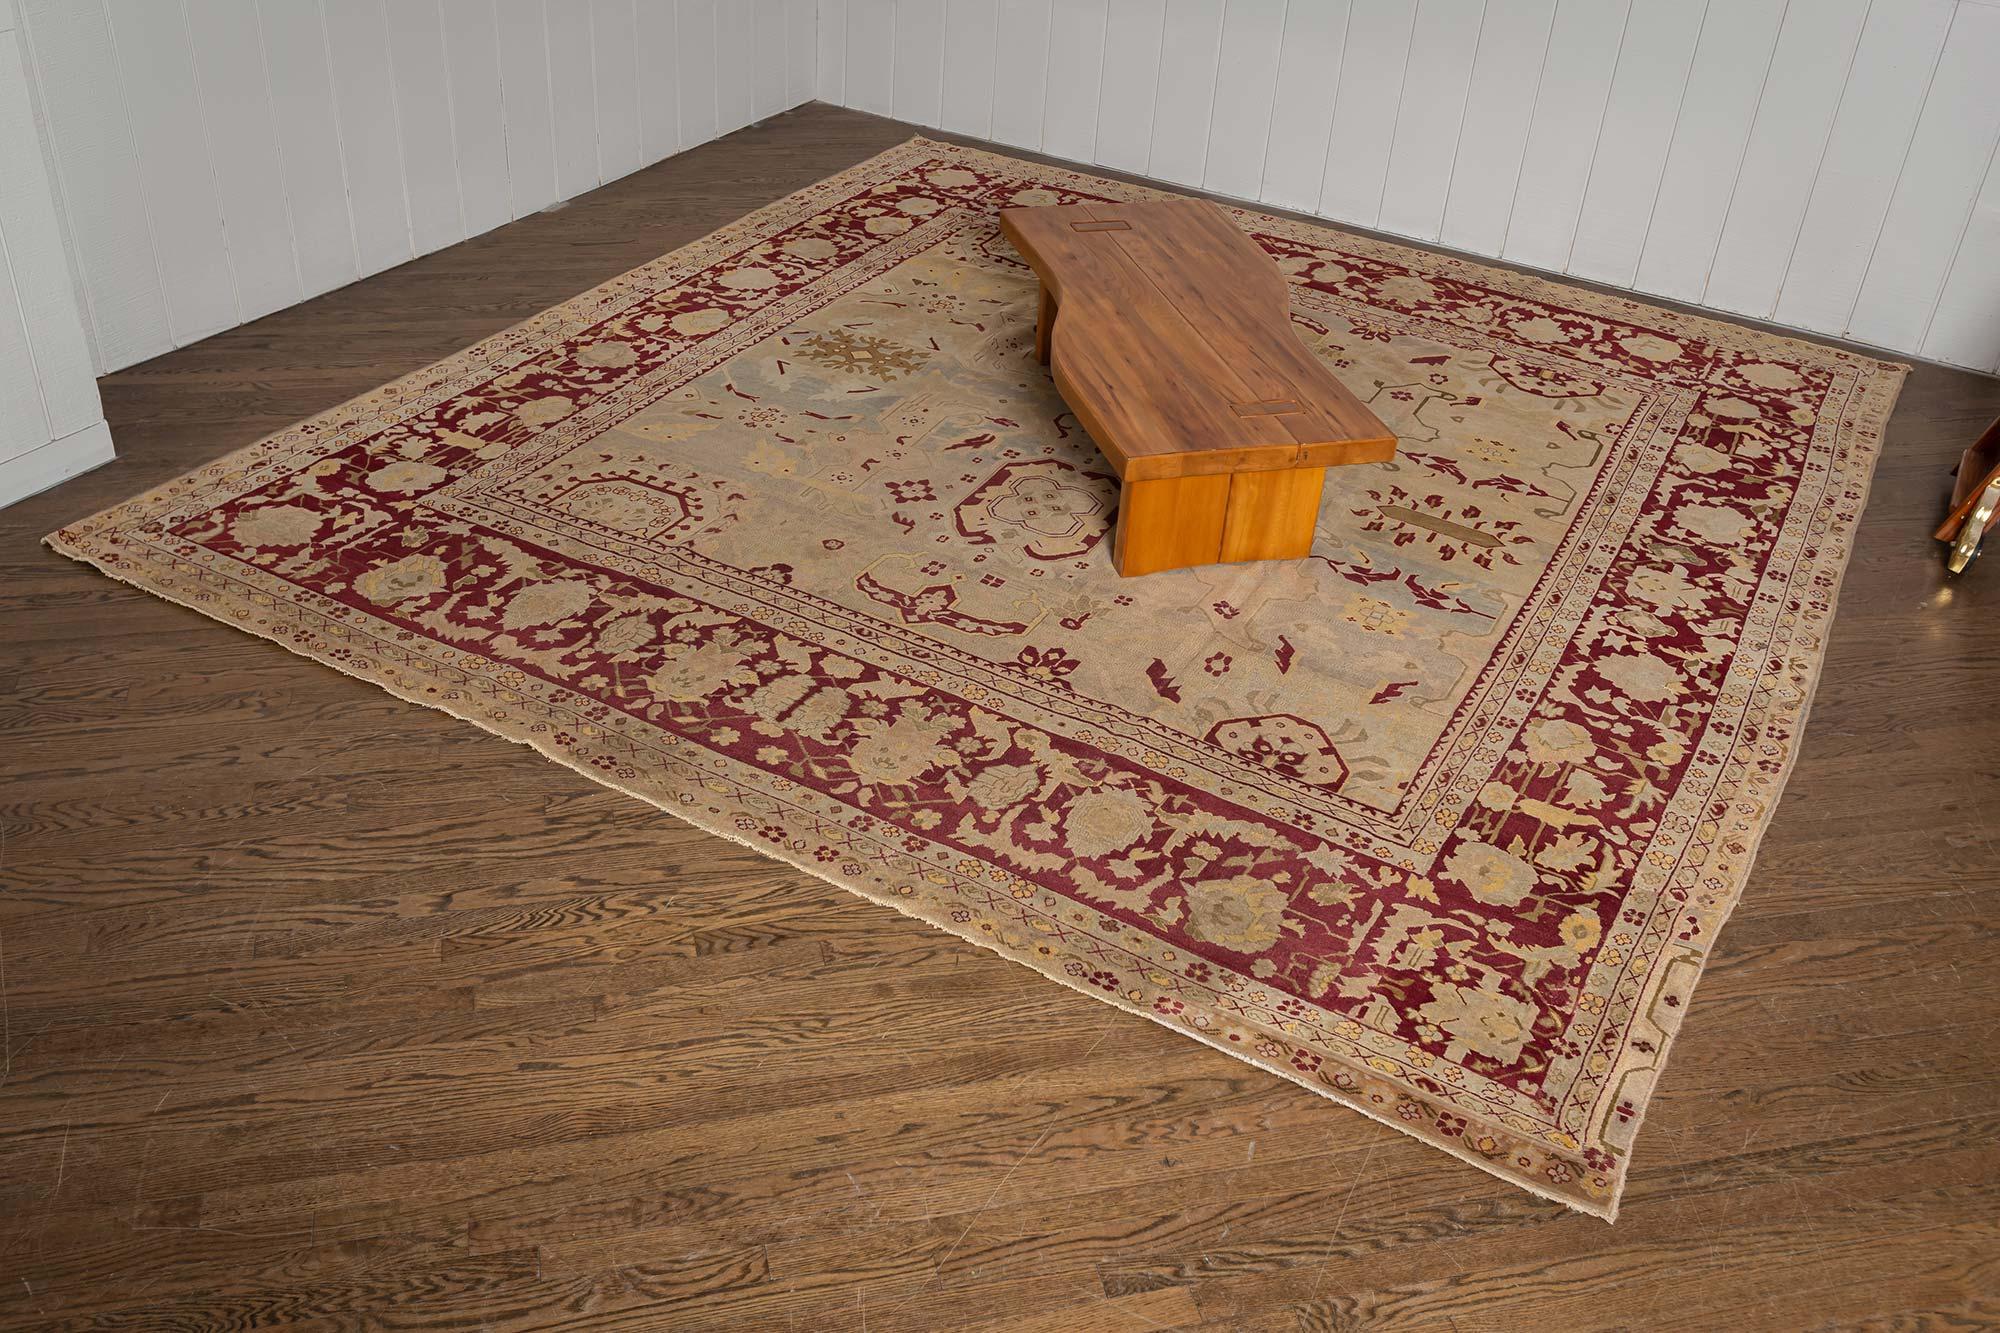 Hochwertiger indischer Agra-Teppich aus dem frühen 20. Jahrhundert.
Größe: 10'10